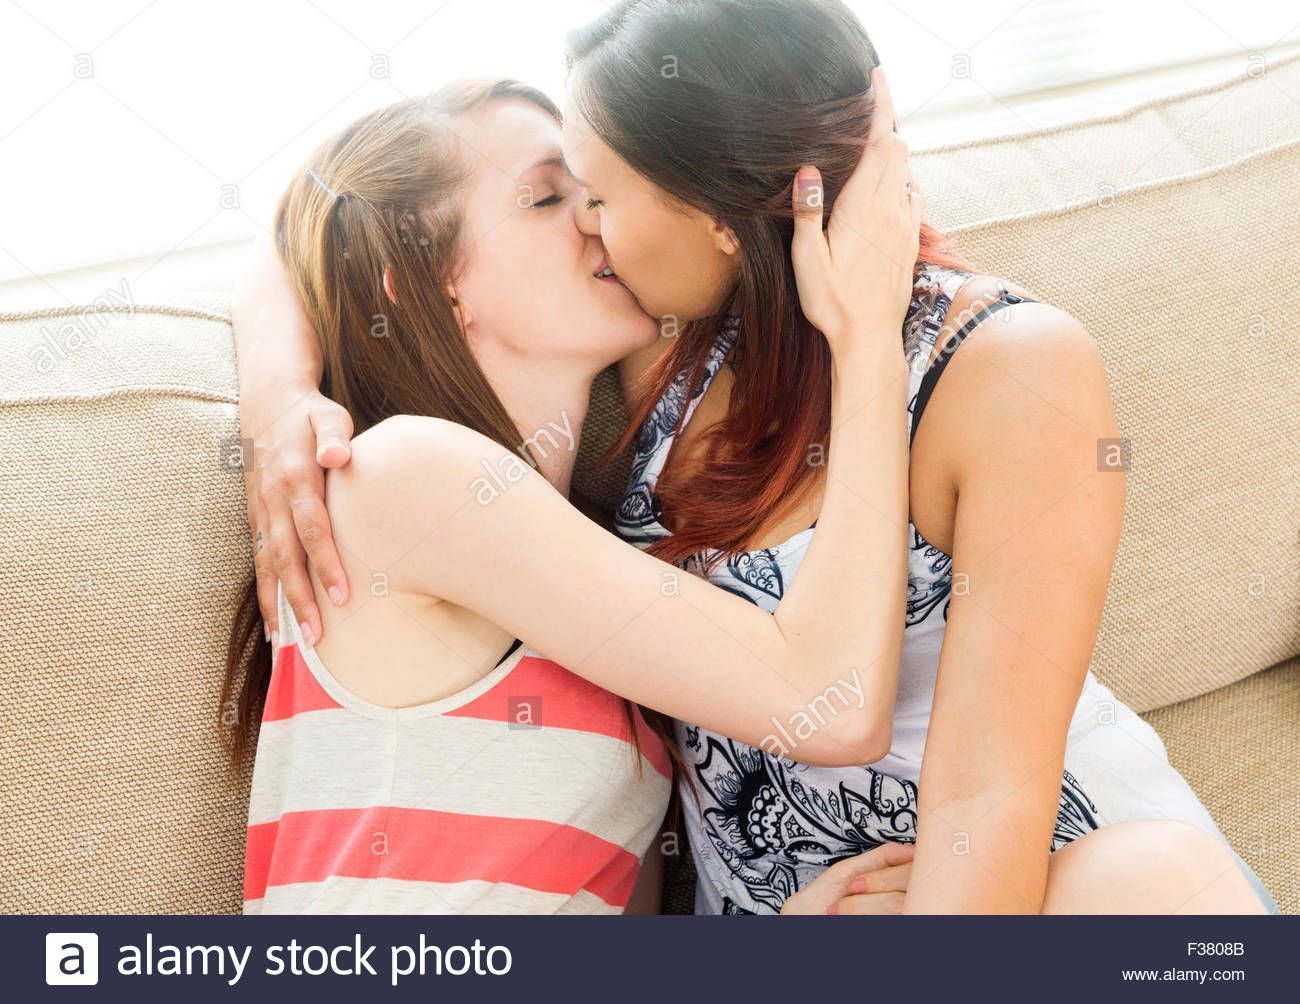 Passionate amateur lesbian